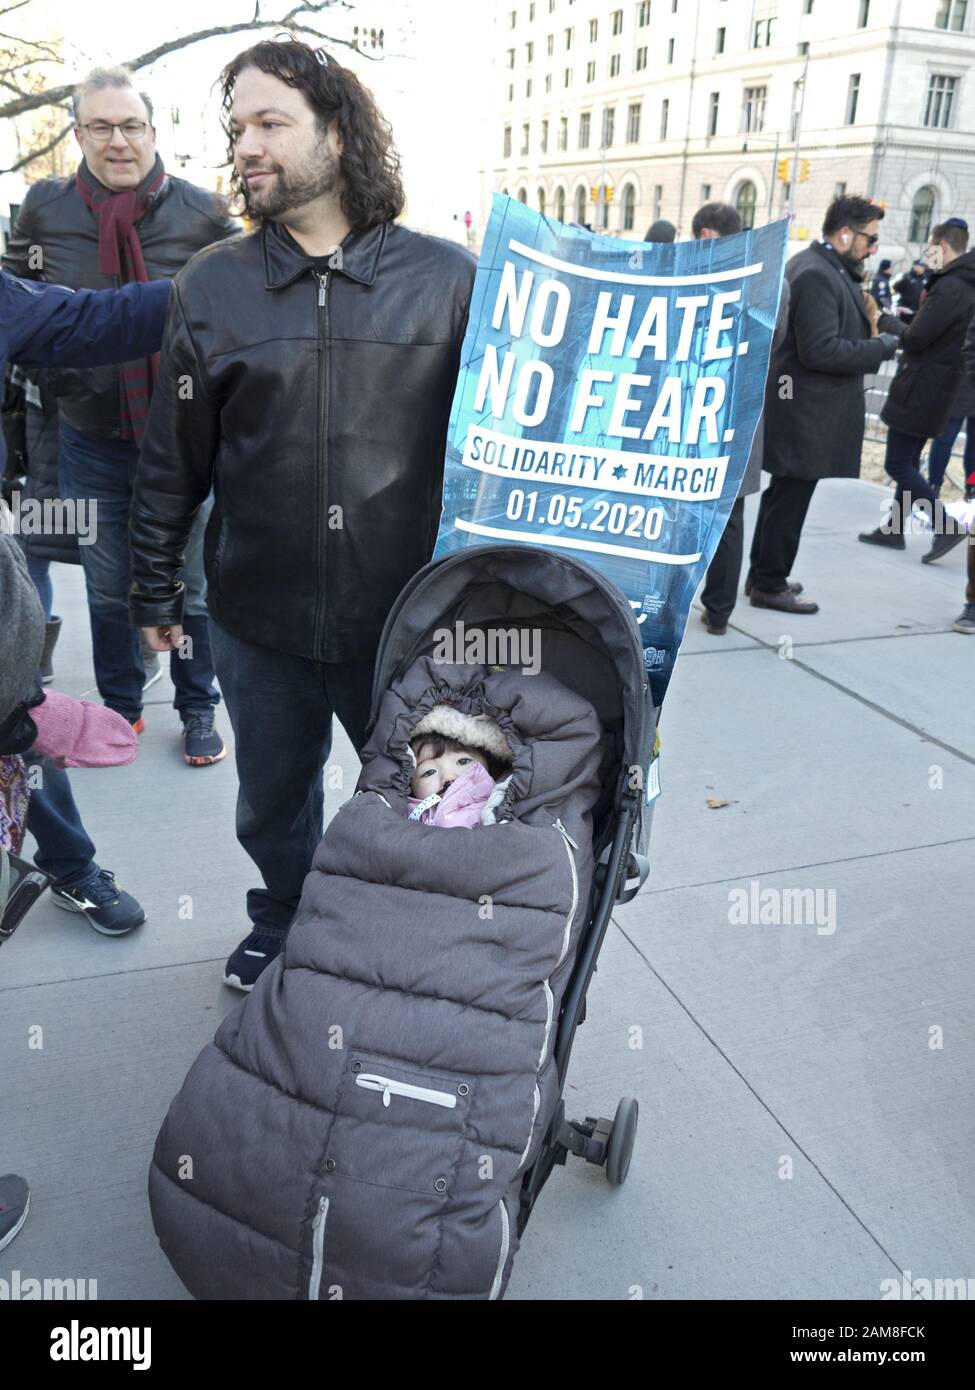 New York, Stati Uniti d'America. 5 gennaio 2020. Circa 15.000 manifestanti sono scesi in piazza in nessun odio alcun timore marzo in risposta ad un aumento di anti-semita attac Foto Stock